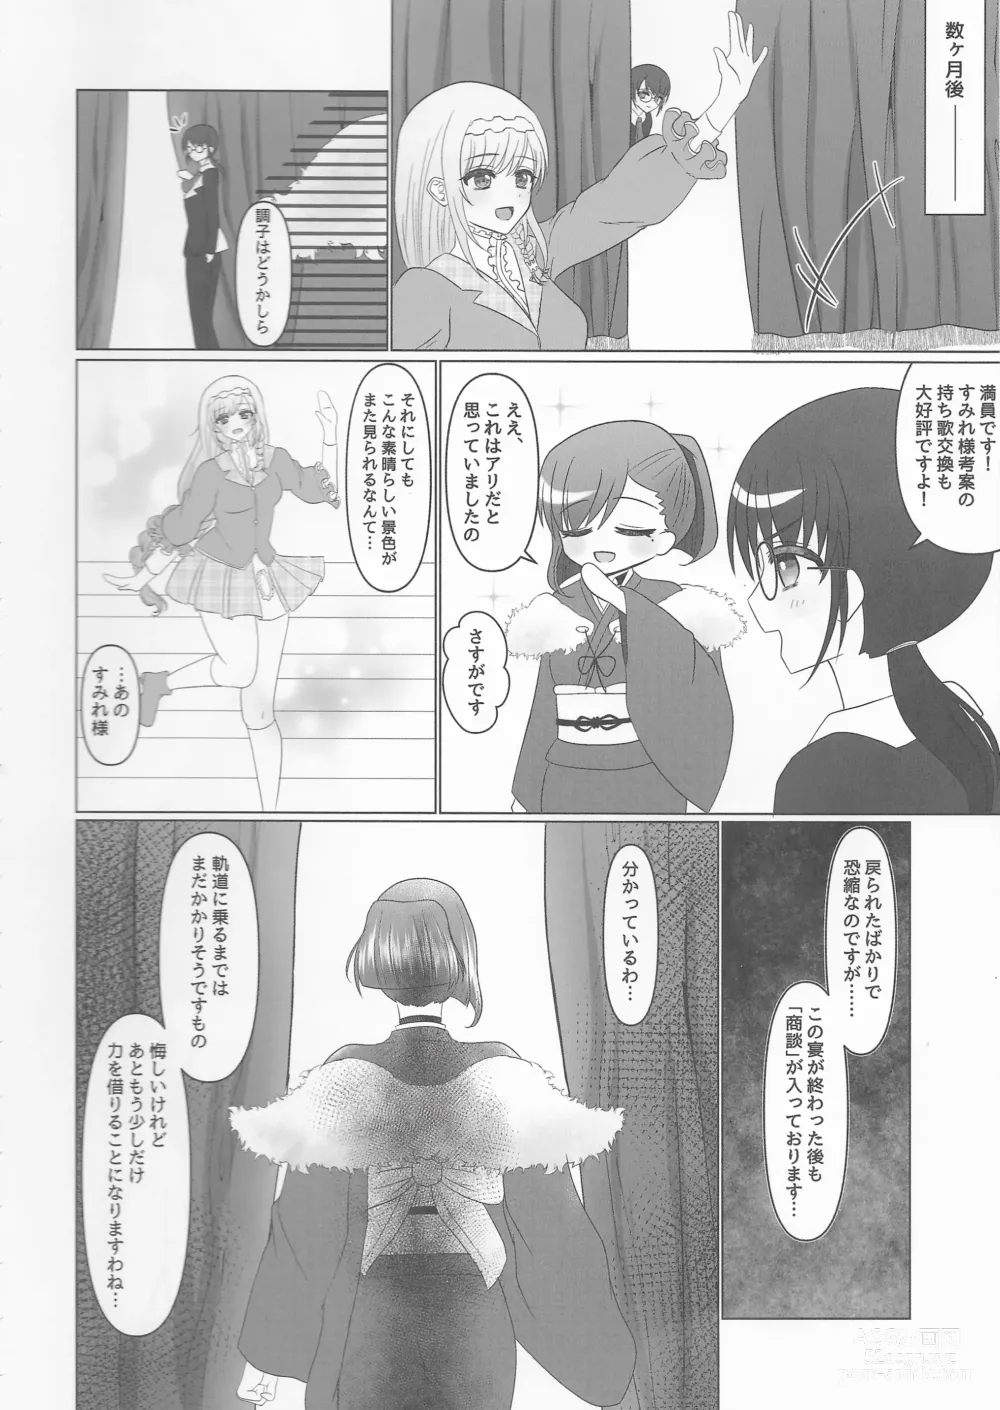 Page 35 of doujinshi Kokkai, Sumire Iro